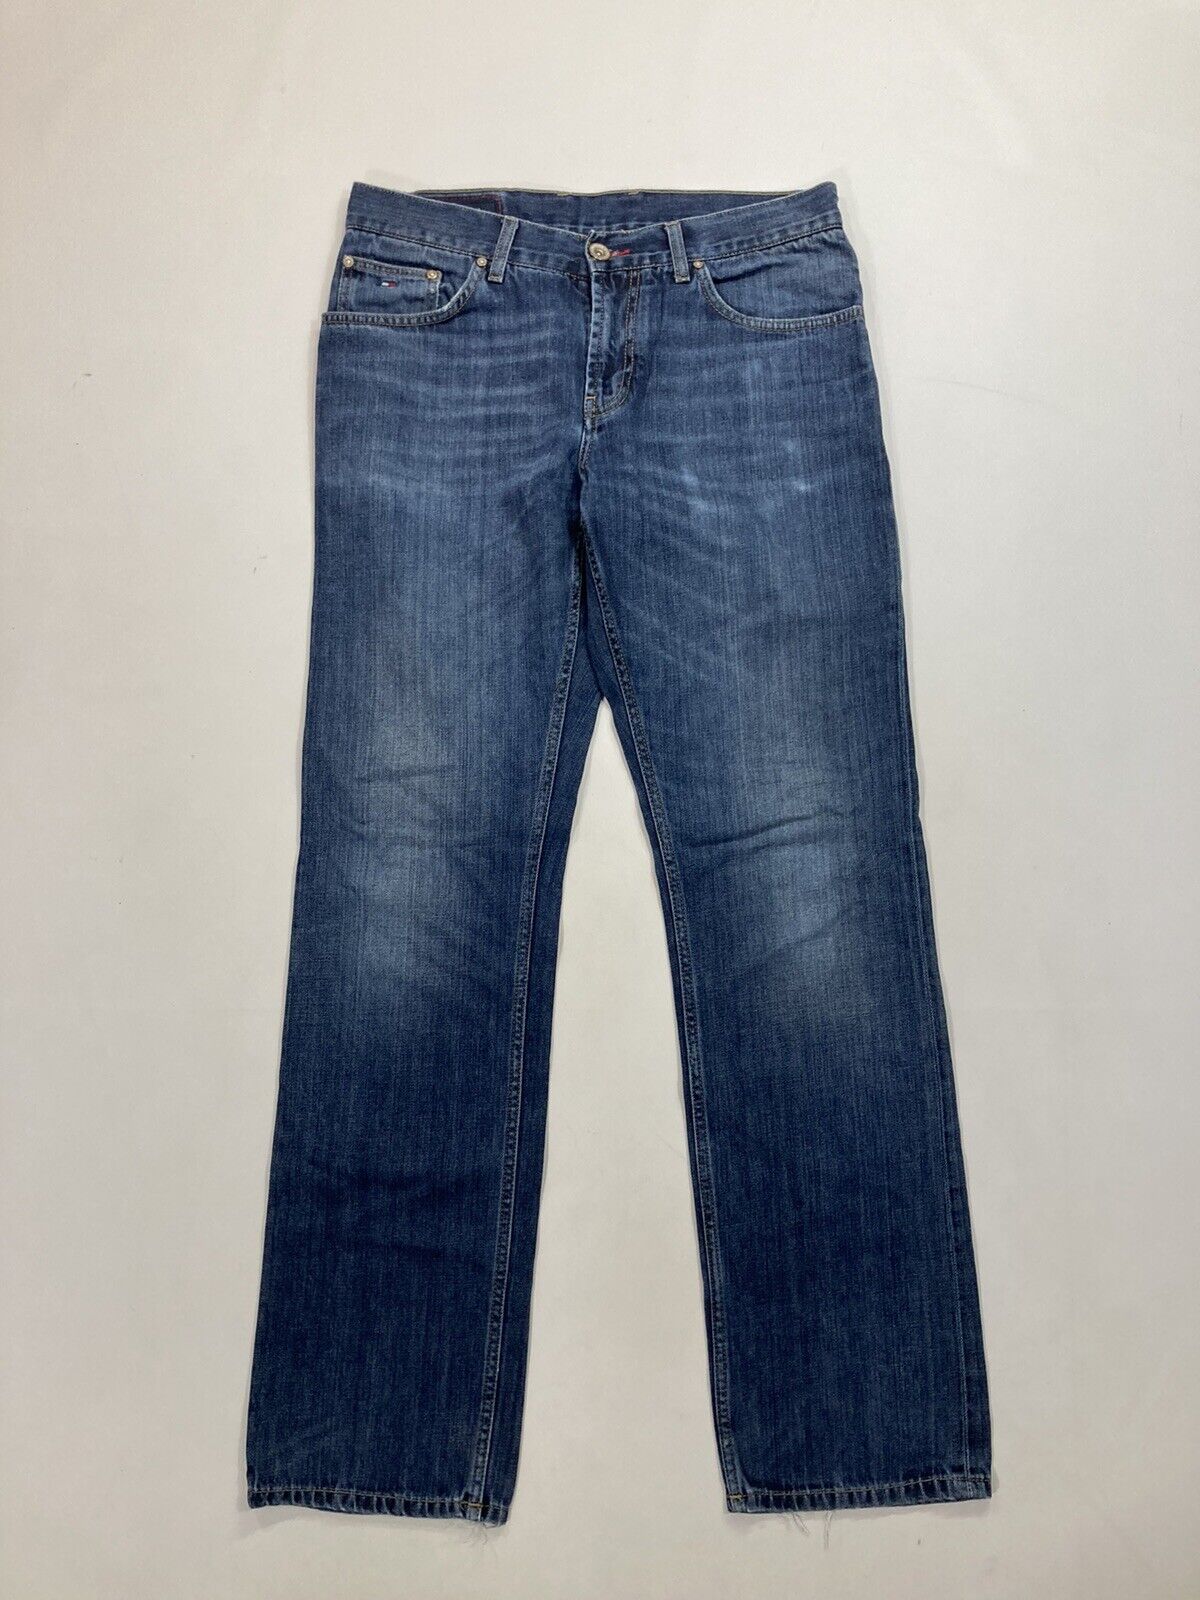 TOMMY HILFIGER MERCER Jeans - W32 L34 - Blue - Go… - image 1